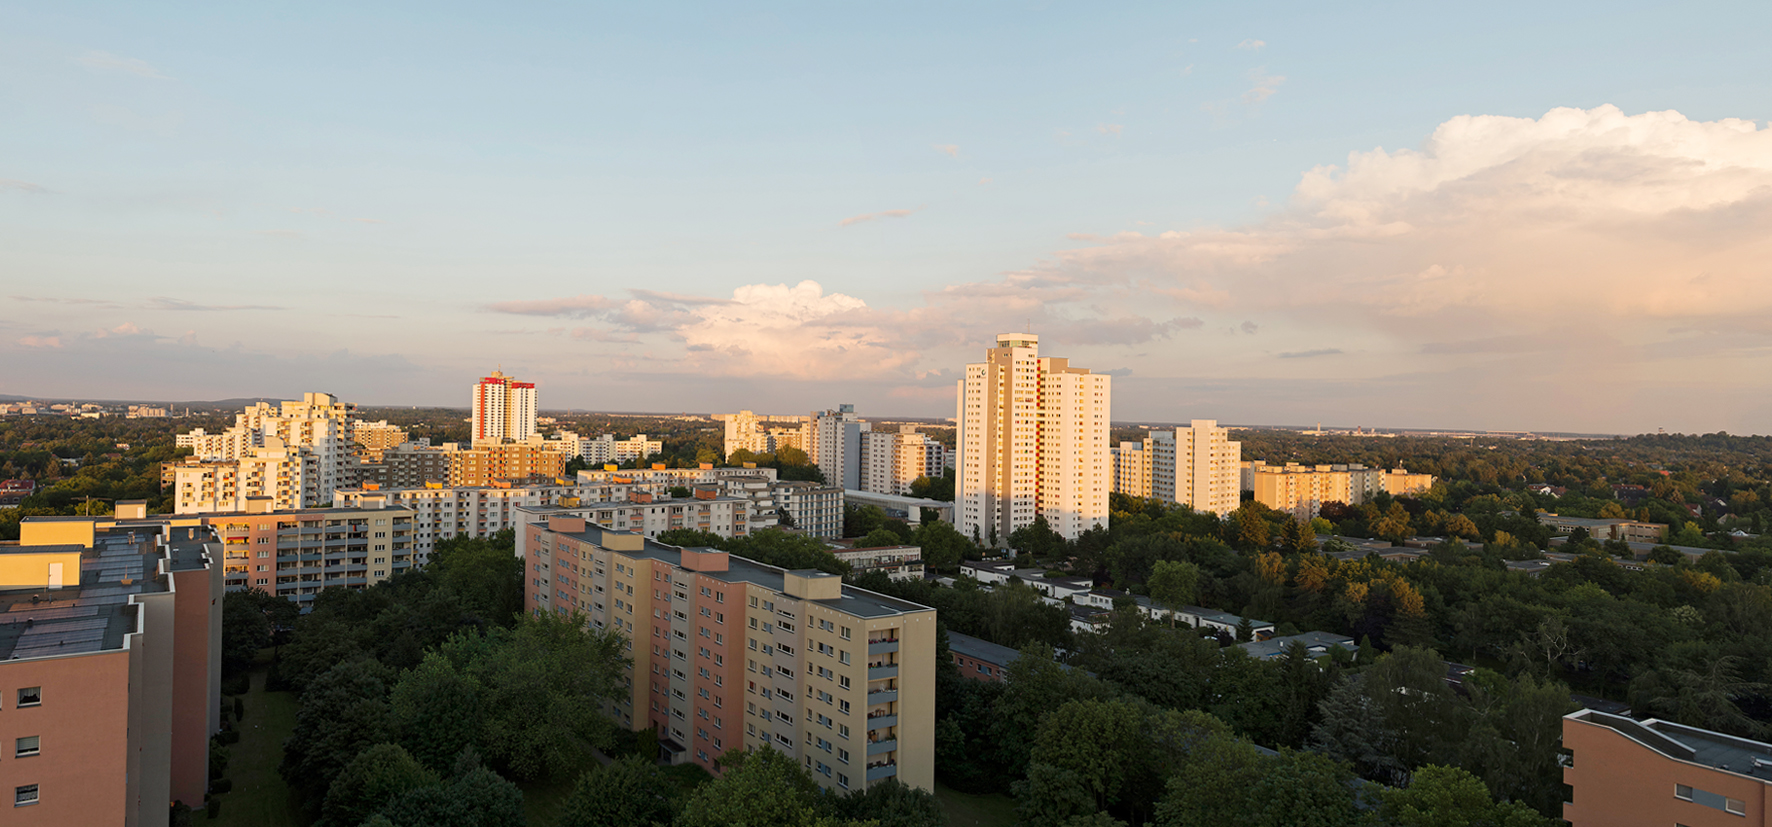 Luftbild von der Gropiusstadt in Berlin.